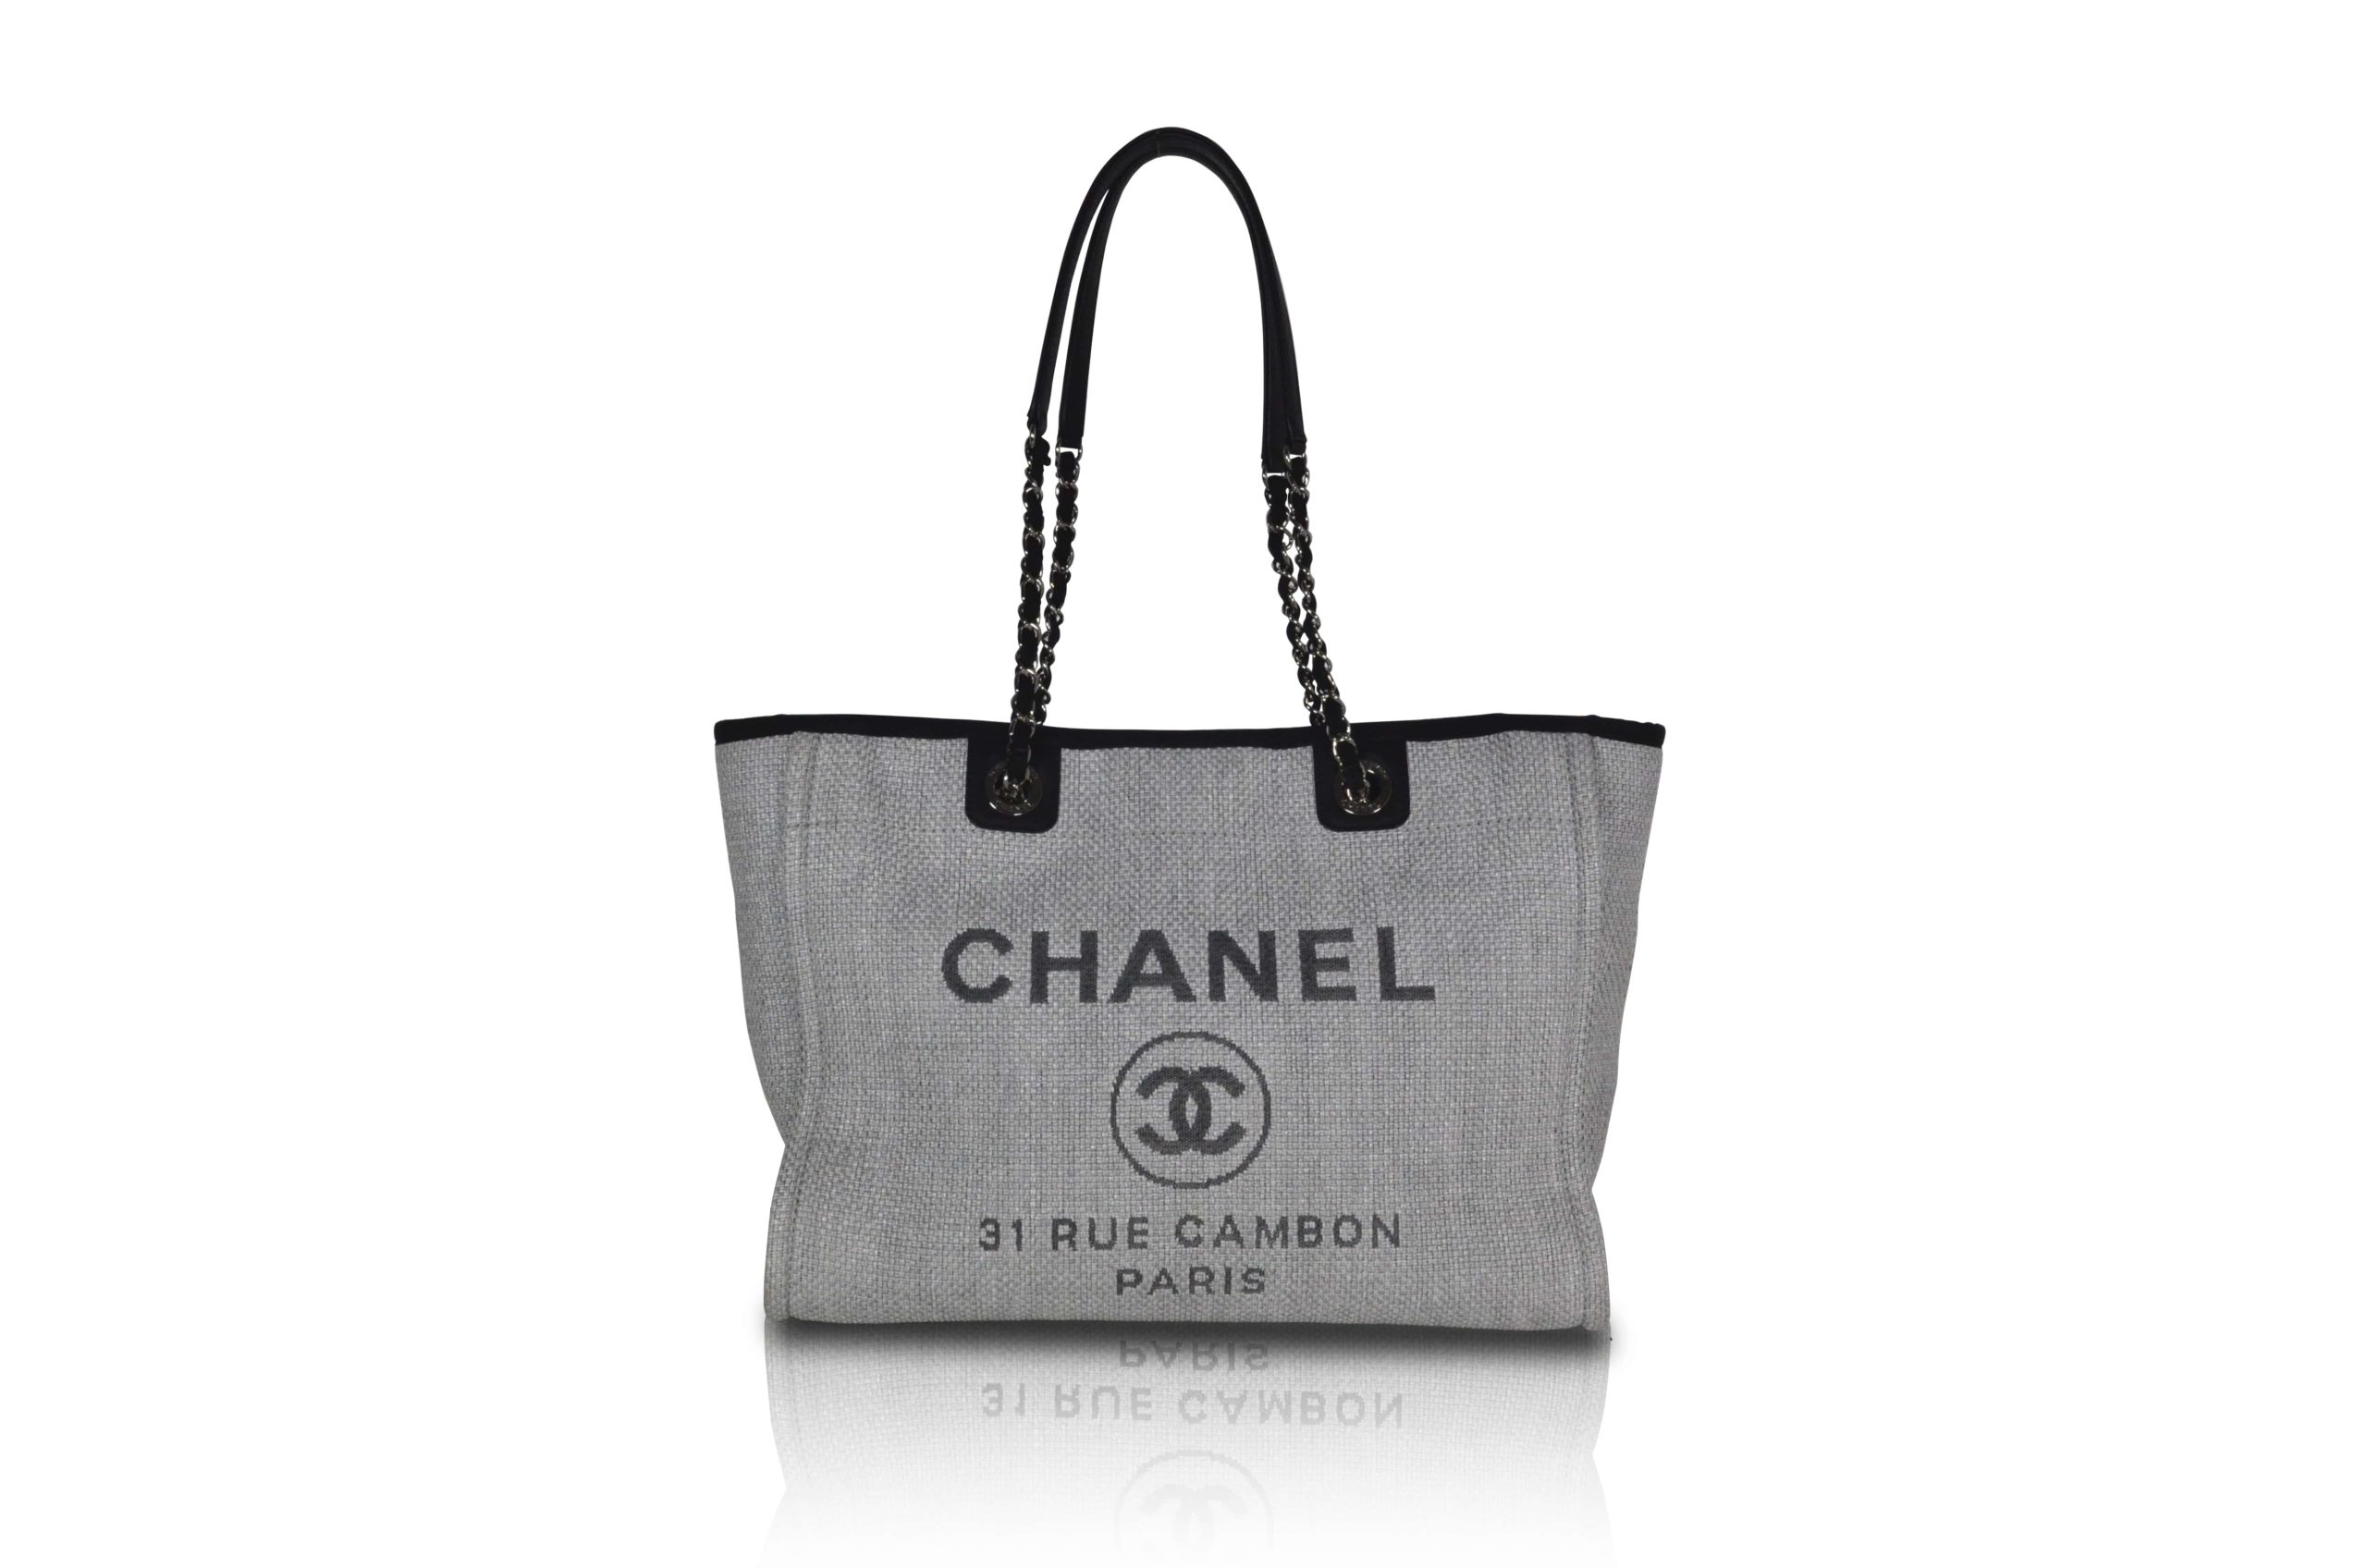 Produktbild Chanel Deauville 31 Rue Cambon Shopper